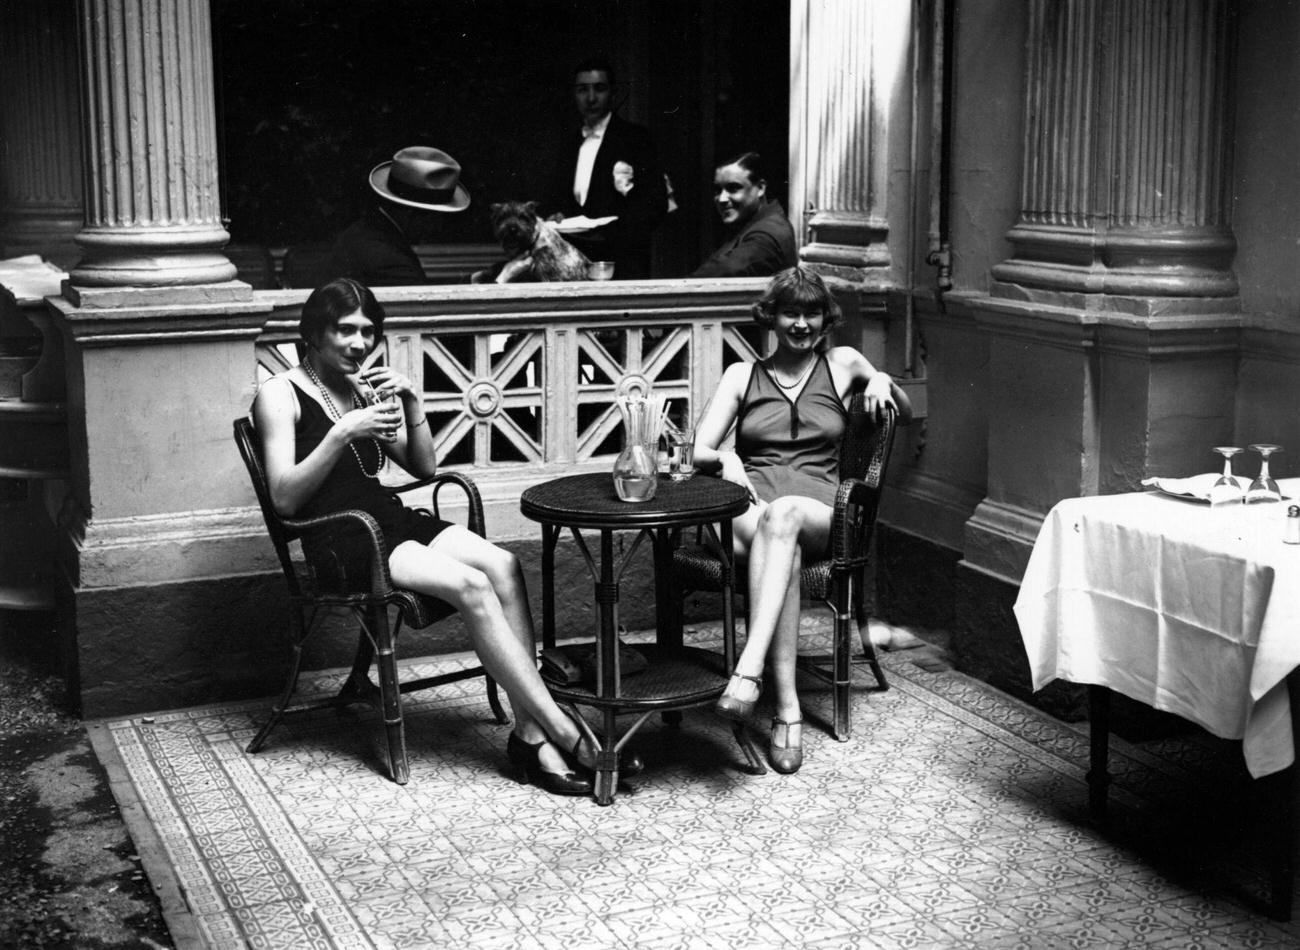 Women in Bathing Suits Enjoying Drinks During Paris Heatwave, 1929